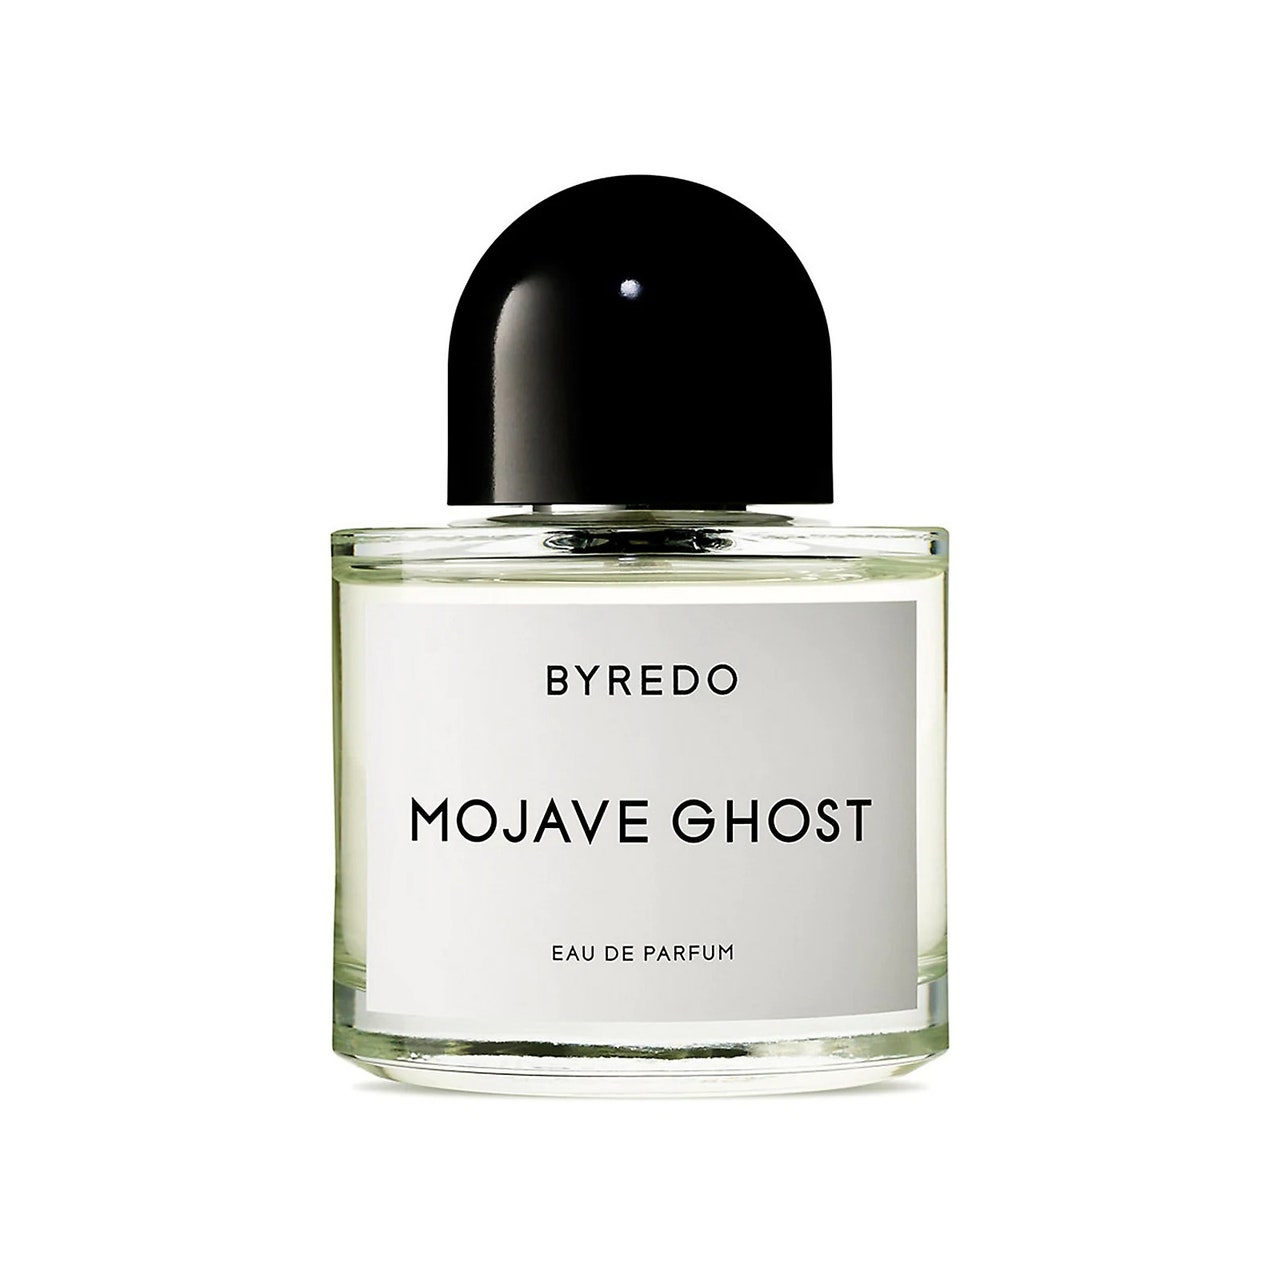 Byredo Mojave Ghost Eau de Parfum, kurze Parfümflasche mit abgerundeter schwarzer Kappe auf weißem Hintergrund